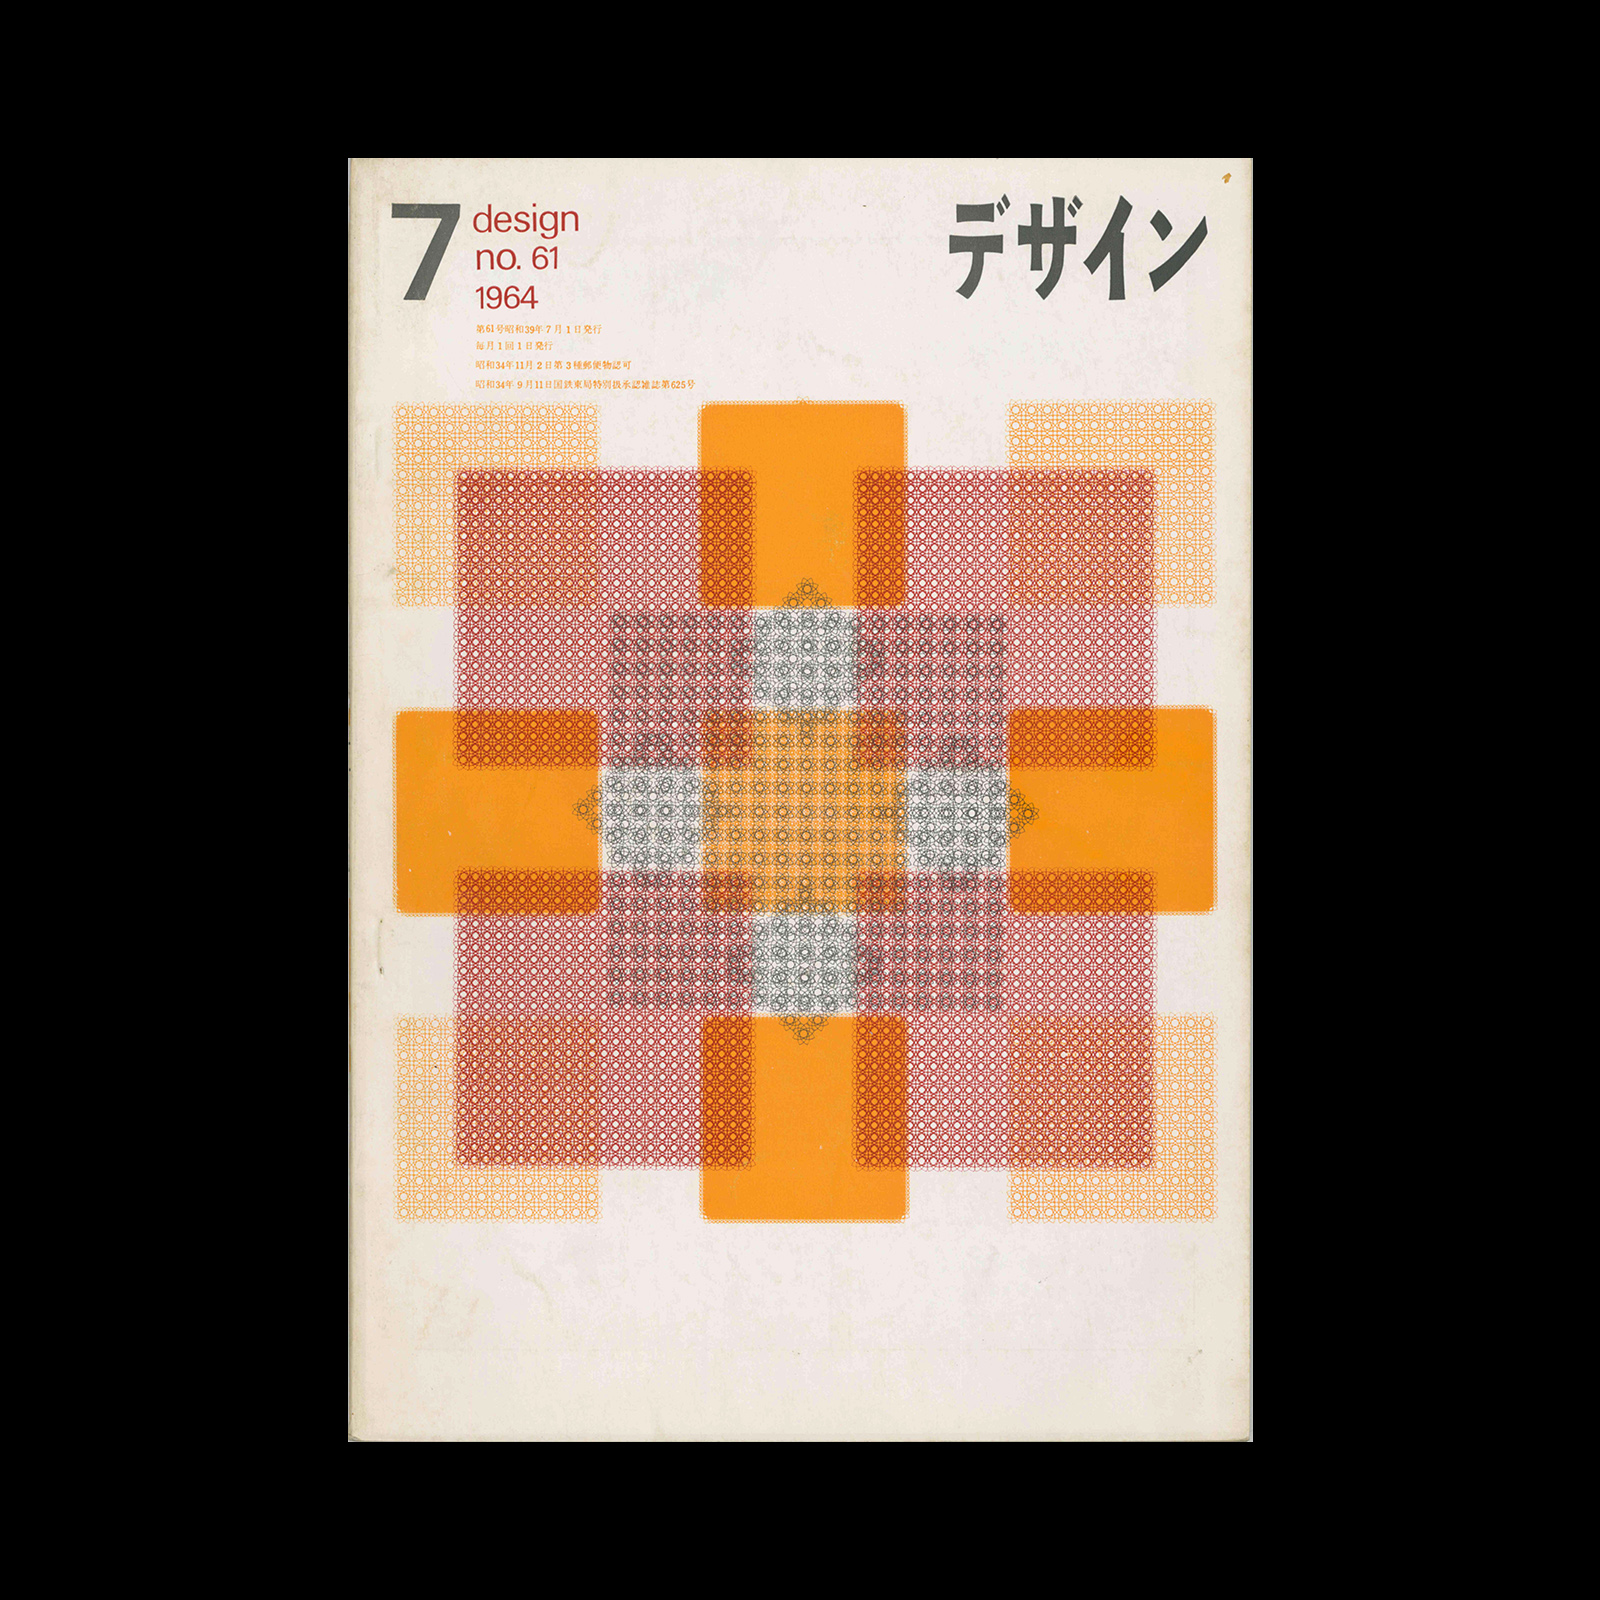 Design (Japan), 61, 1964 - Design Reviewed